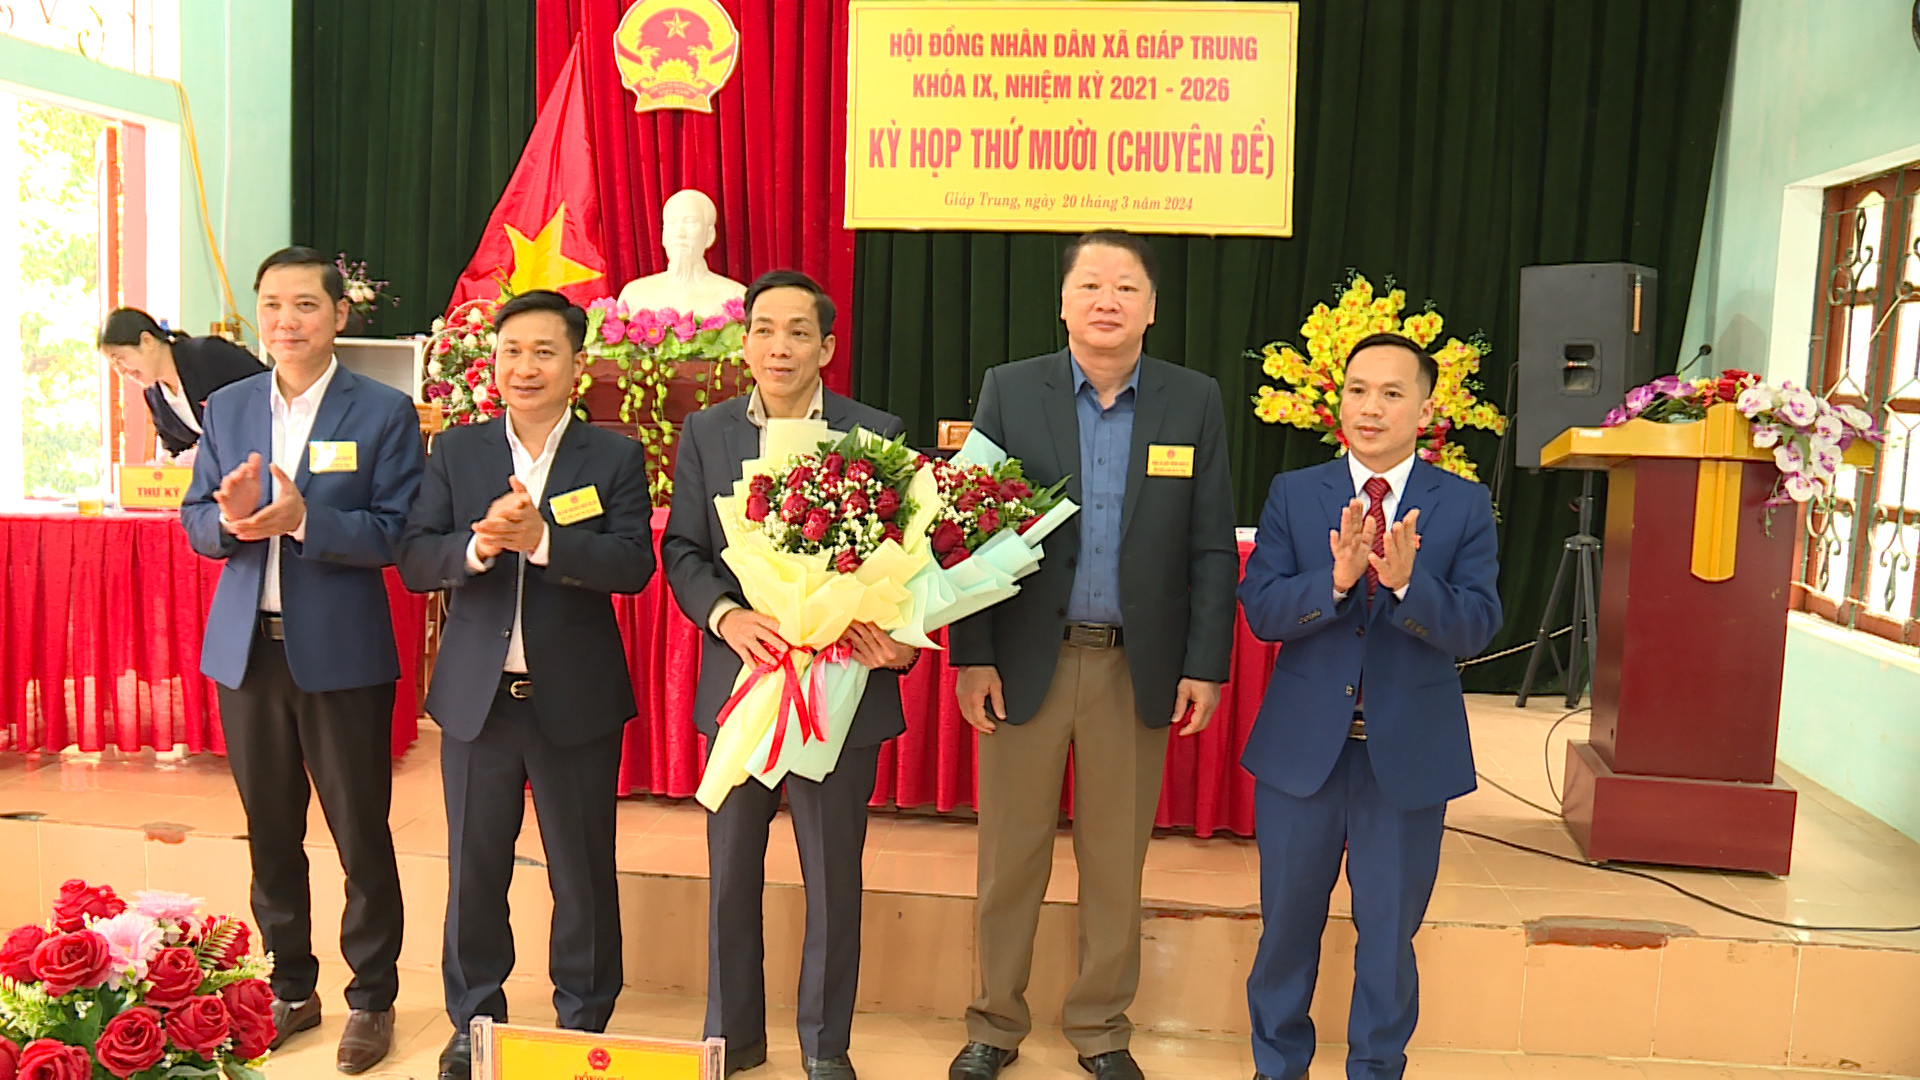 HĐND xã Giáp Trung tổ chức kỳ họp bầu bổ sung chức danh Chủ tịch HĐND xã